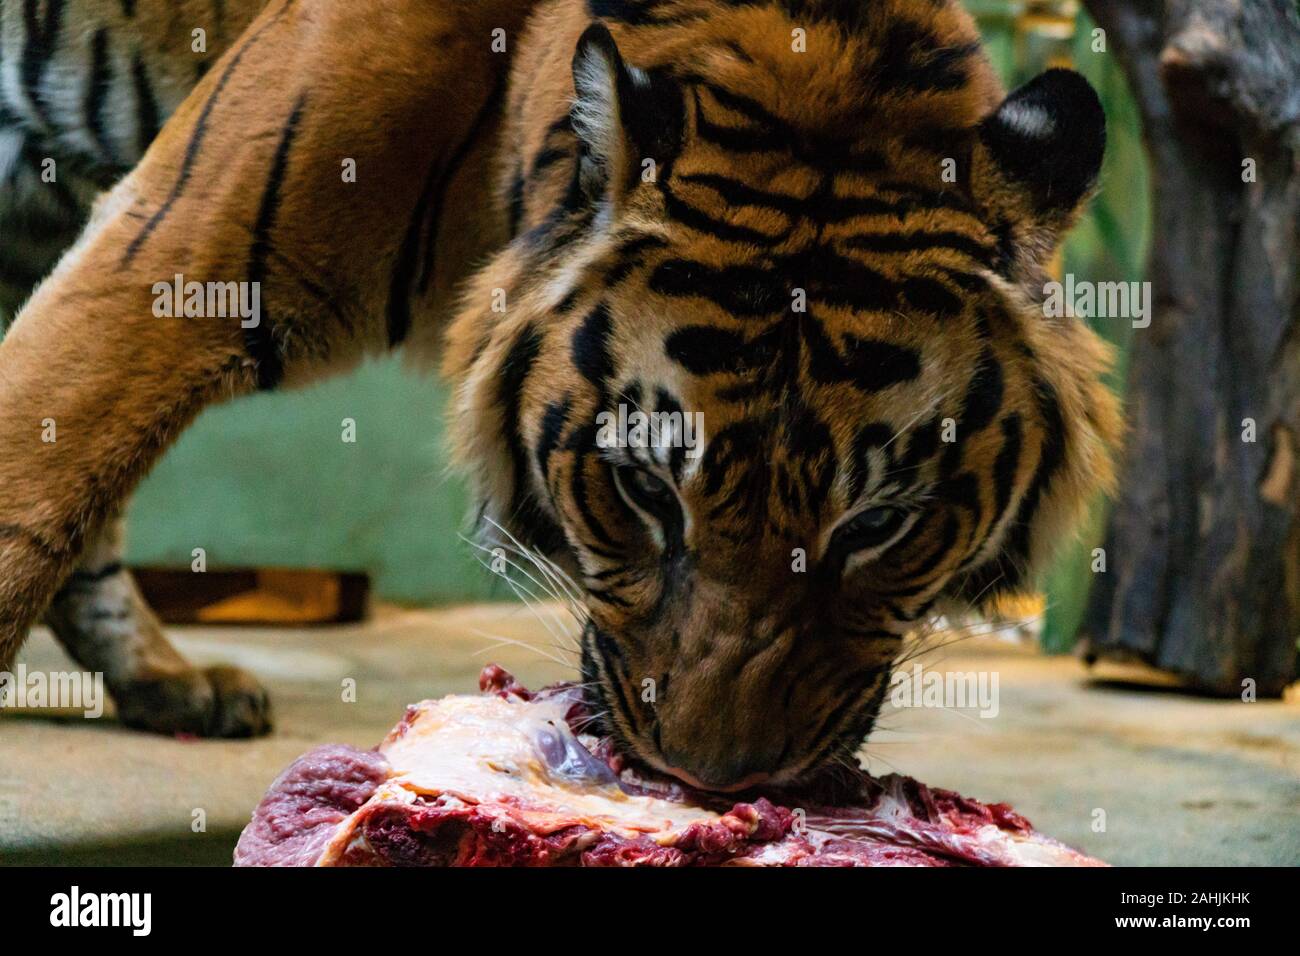 Manger de la viande rouge fraîche de tigres dans un zoo Banque D'Images